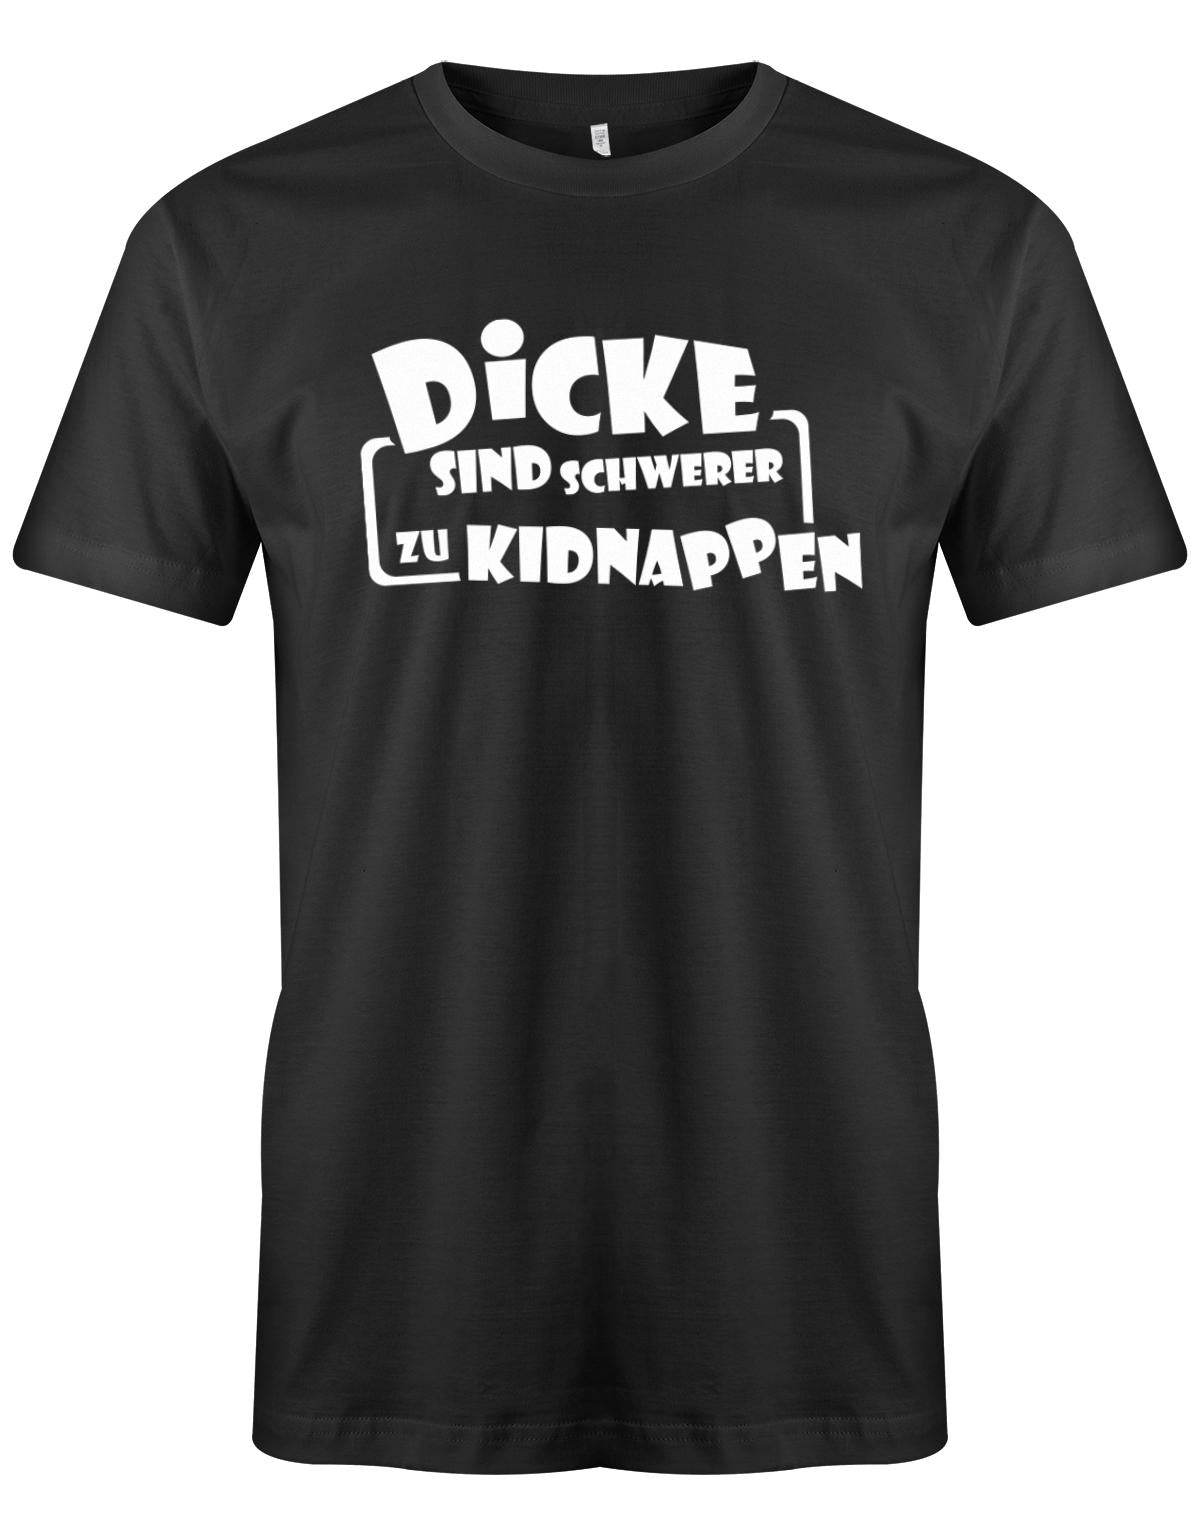 Dicke sind schwerer zu kidnappen - Lustige Sprüche - Herren T-Shirt Schwarz